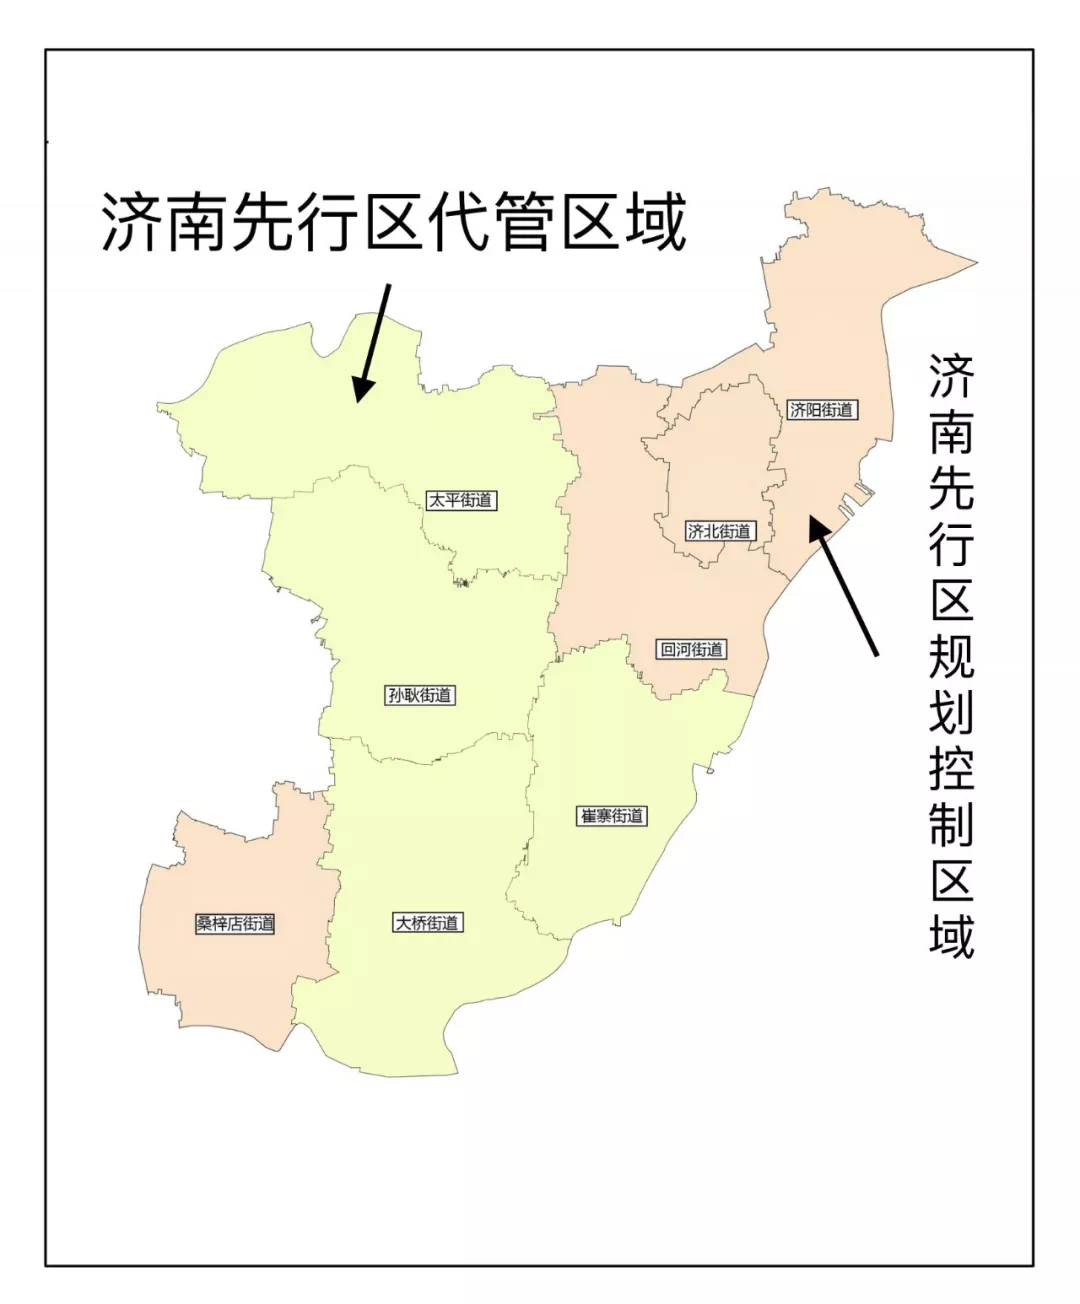 济南先行区新版图敲定 涉及4个街道308个村居